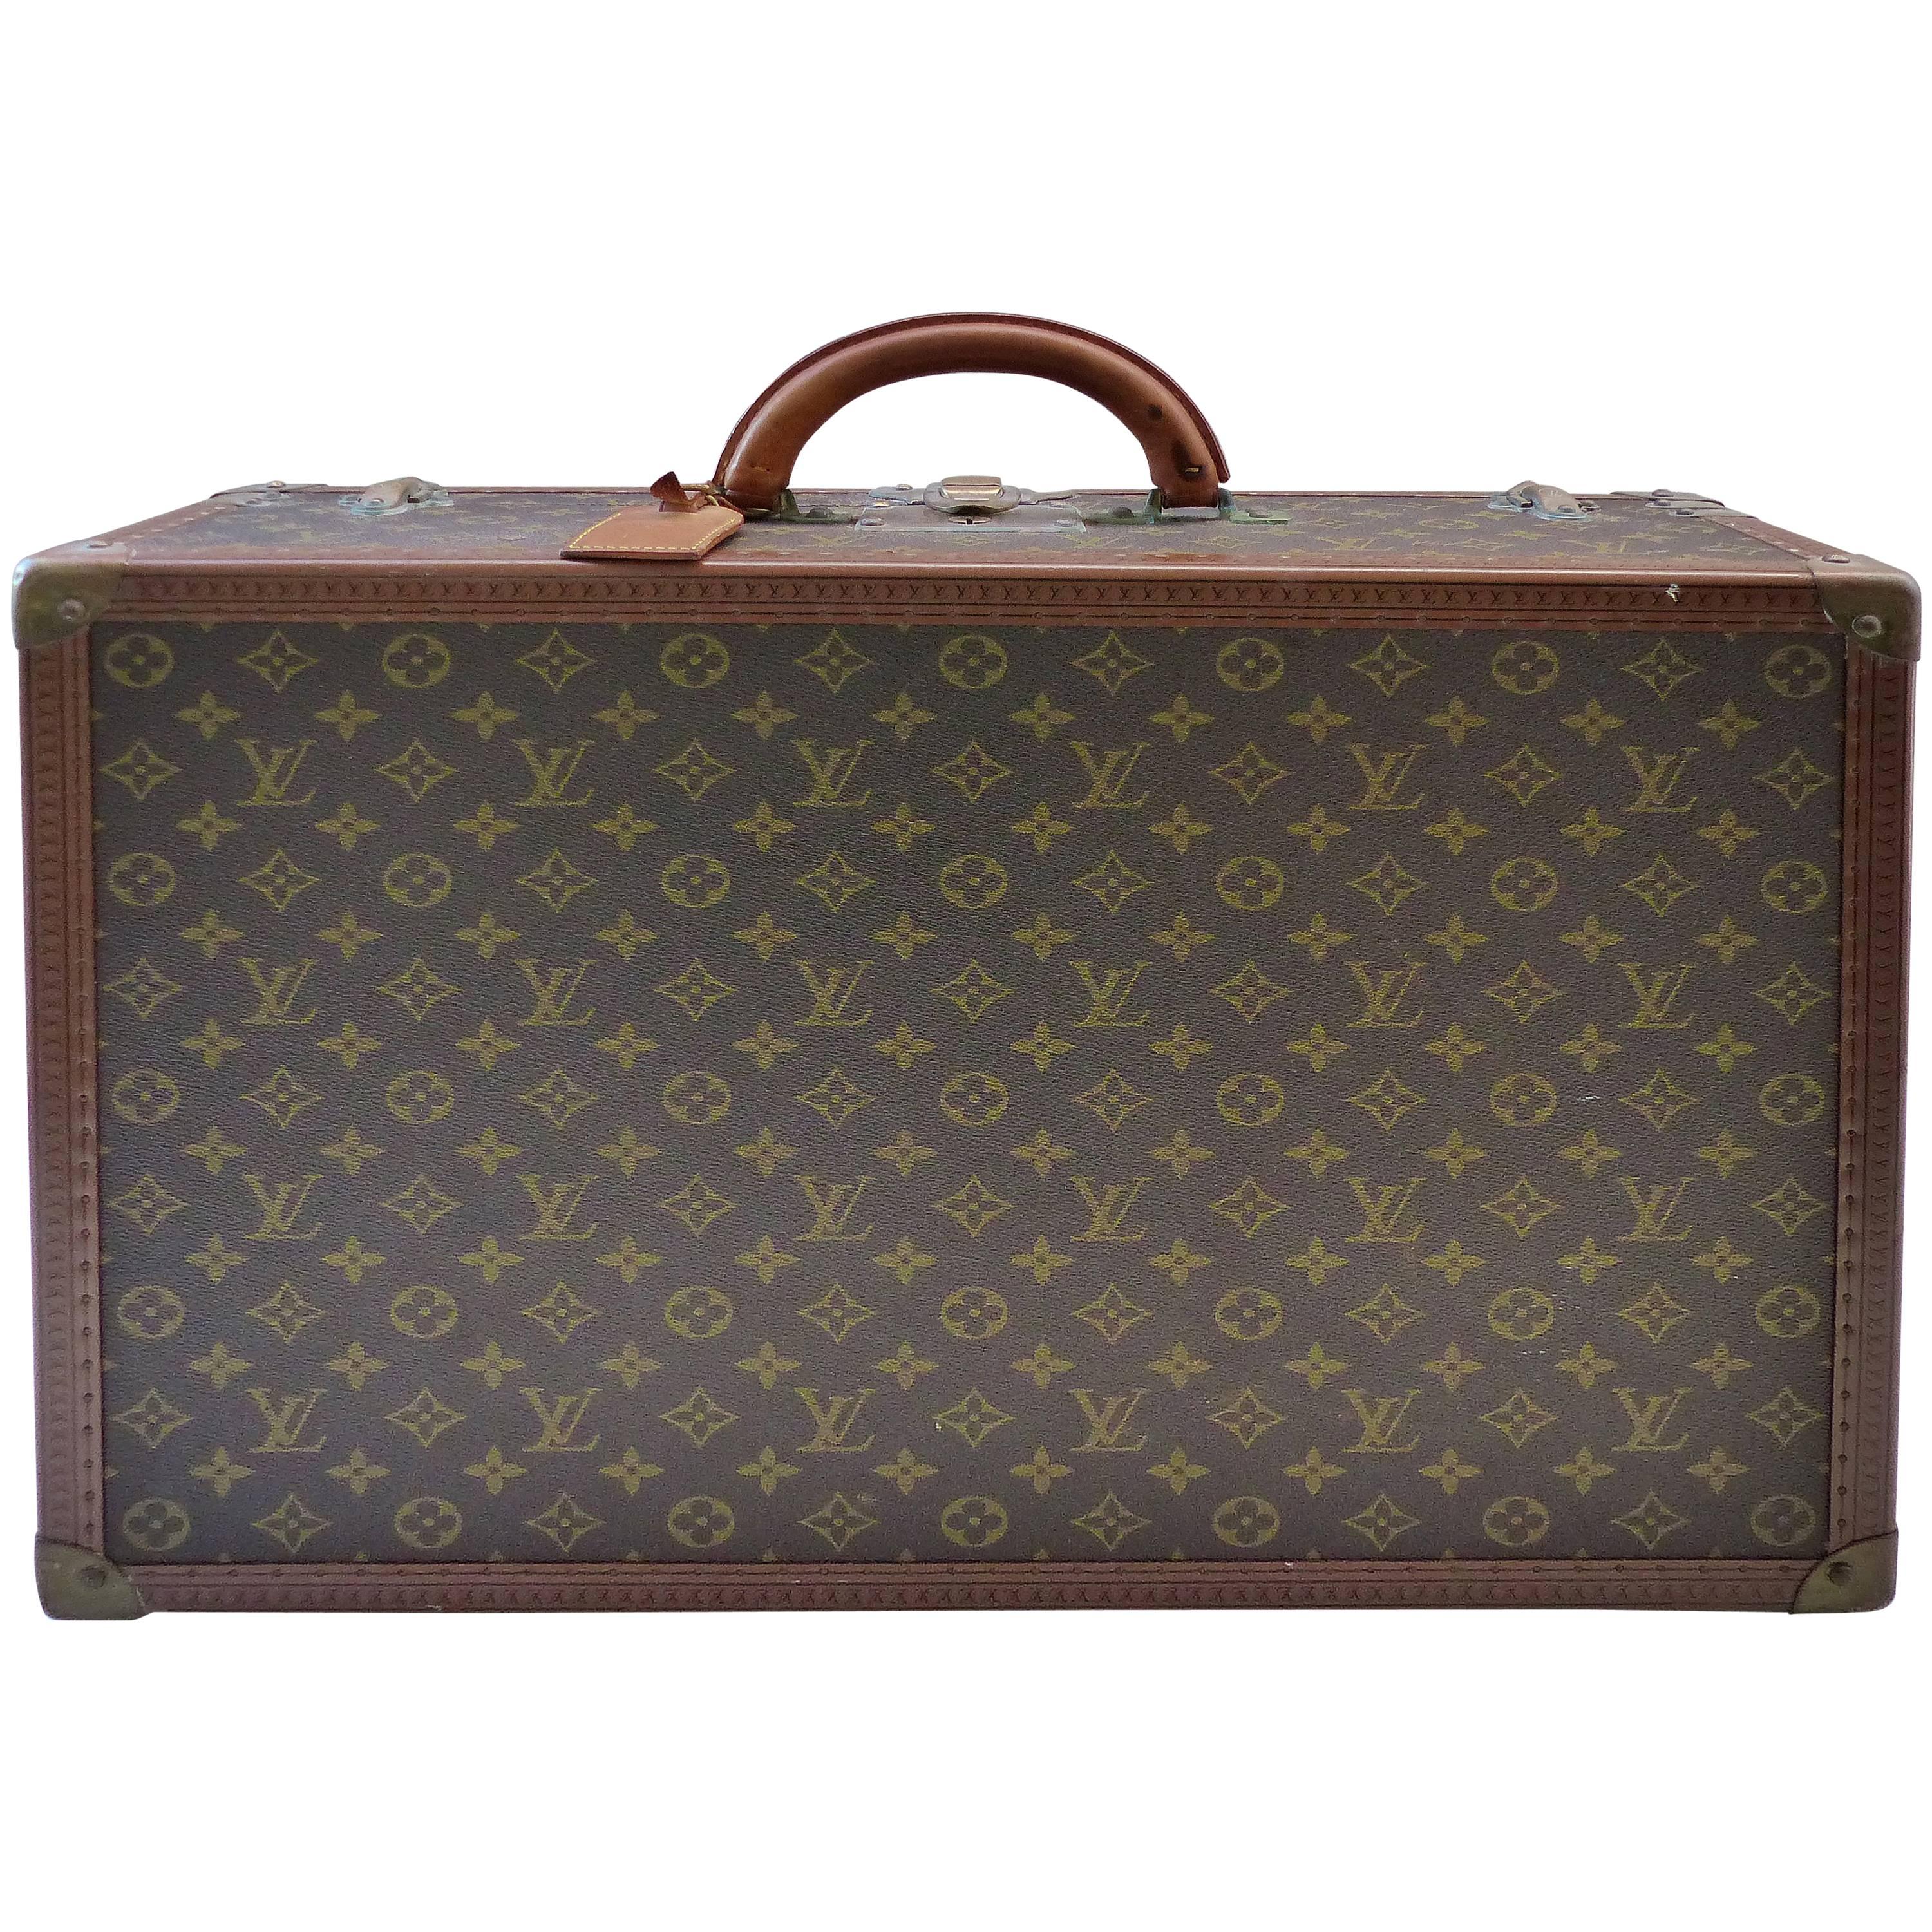 Small Louis Vuitton Hard Case Suitcase, circa 1950s